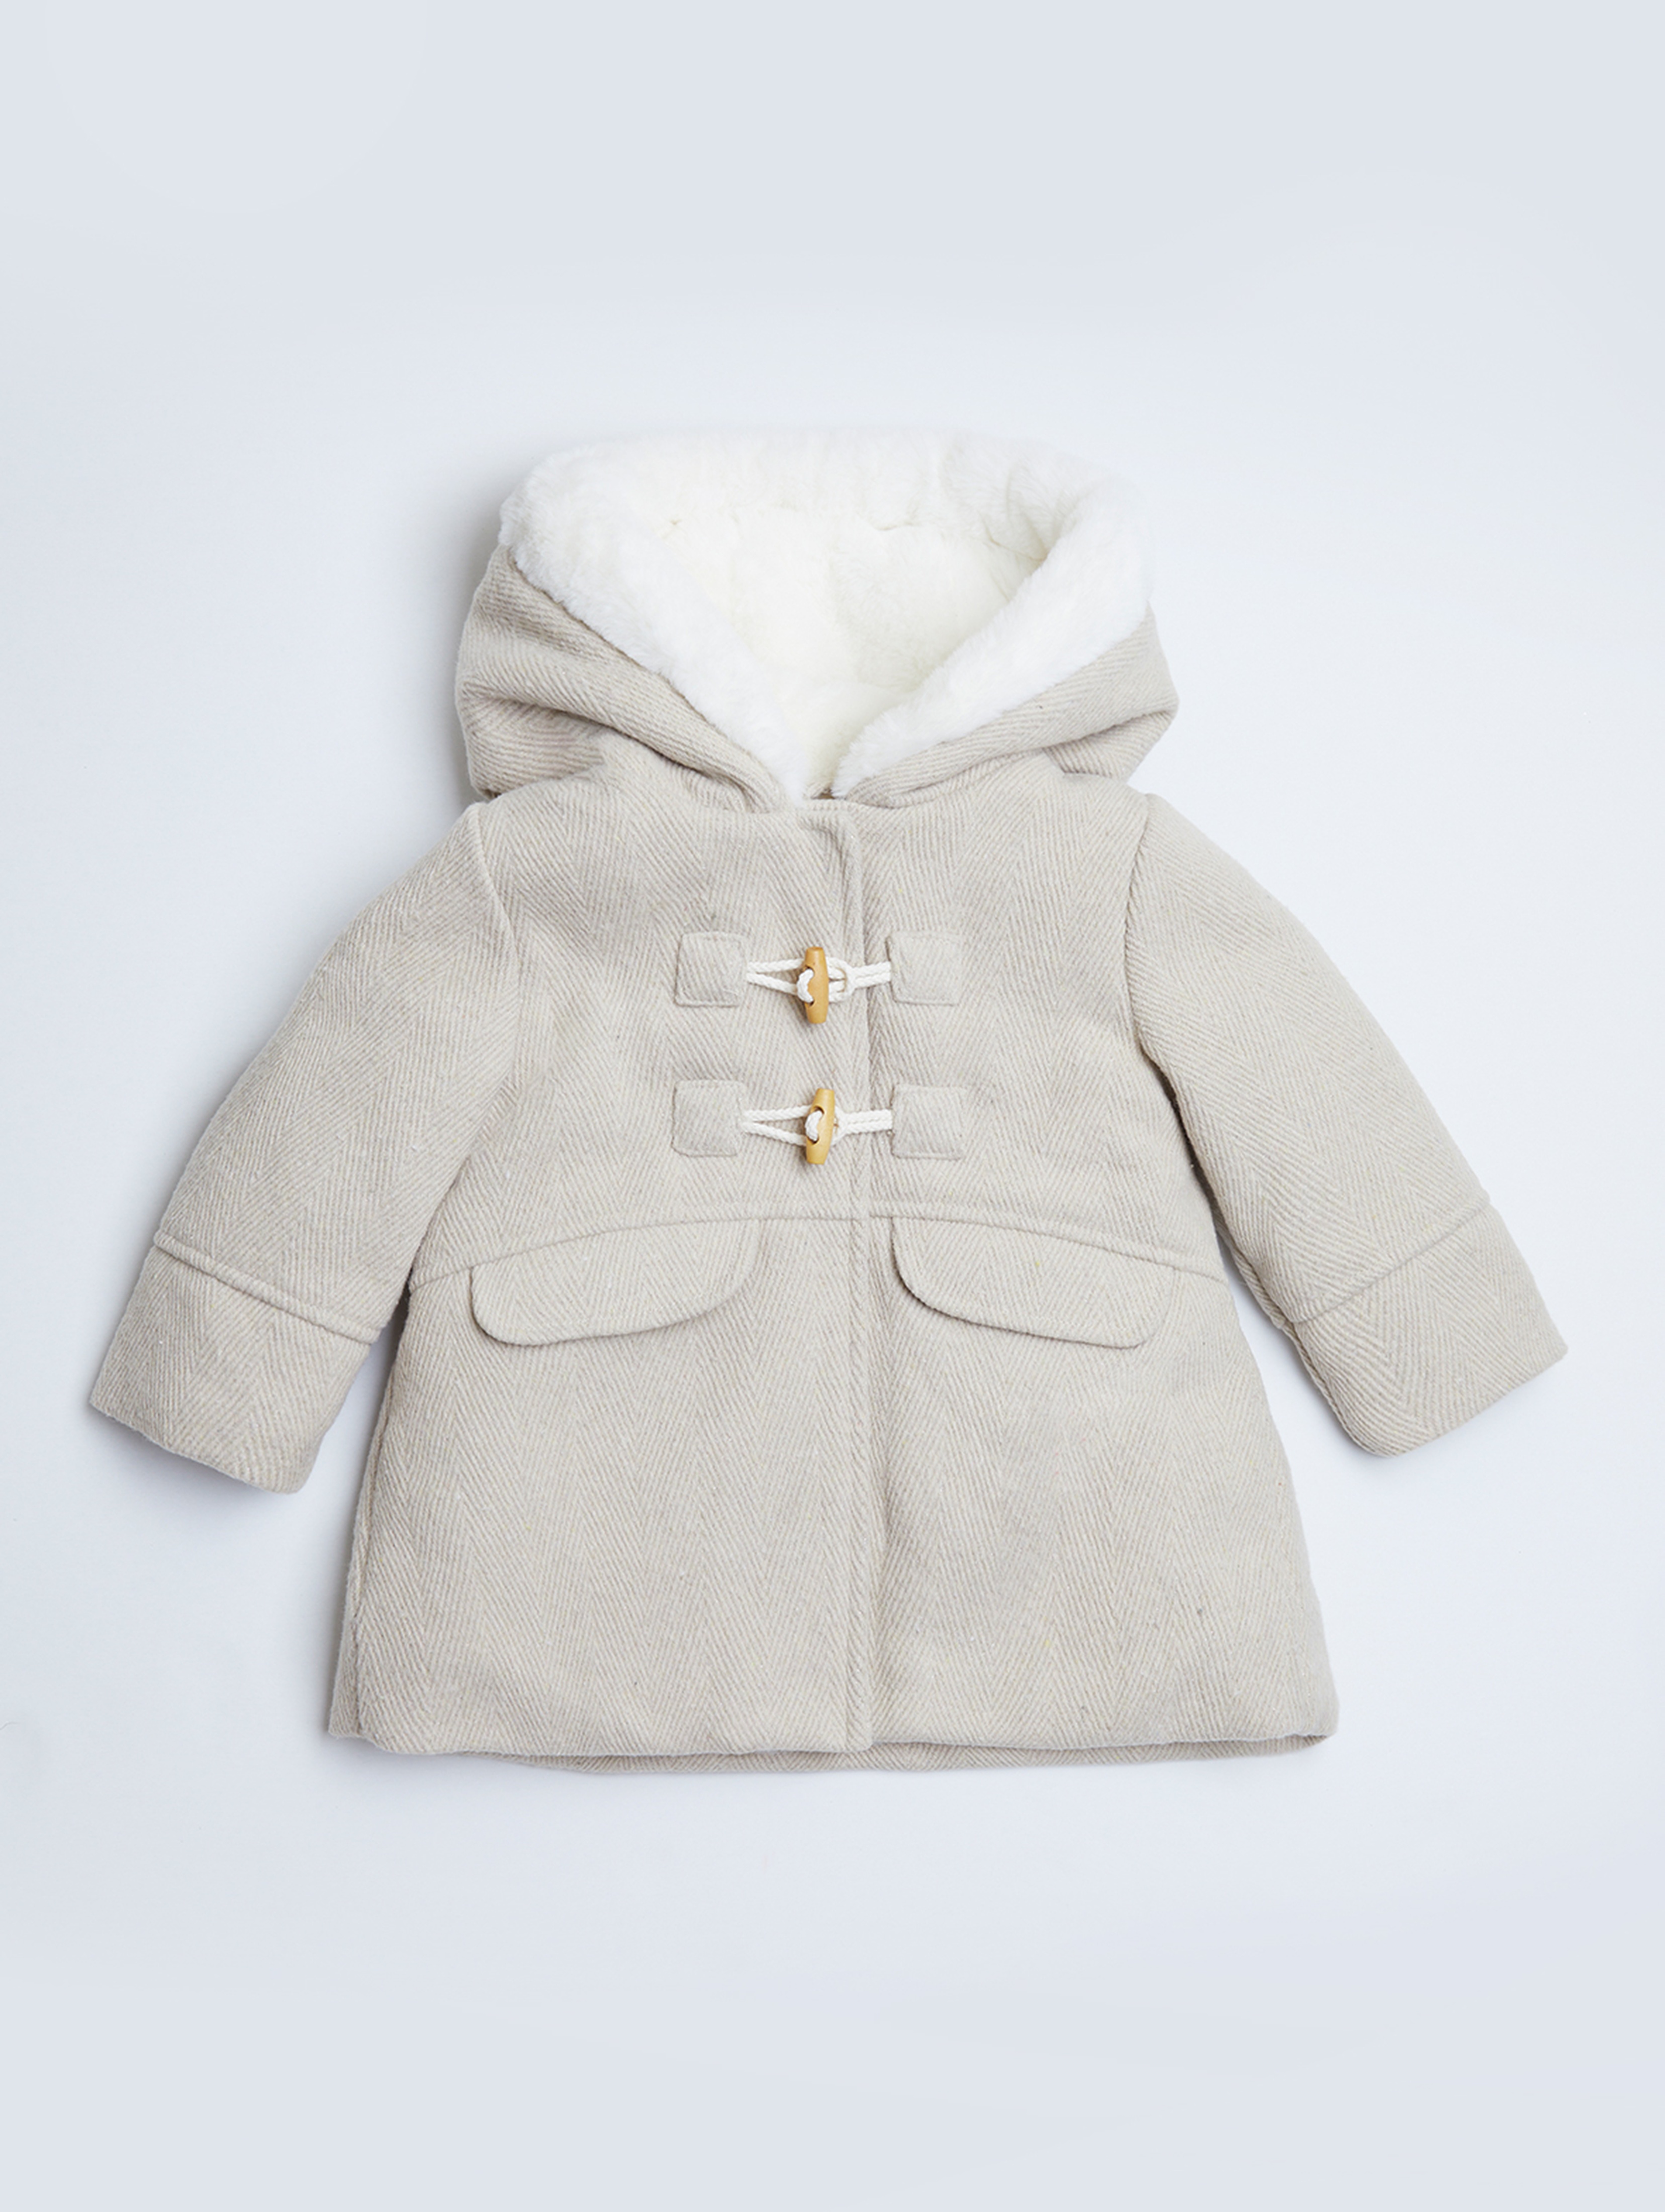 Elegancki płaszcz dla małej dziewczynki - Limited Edition